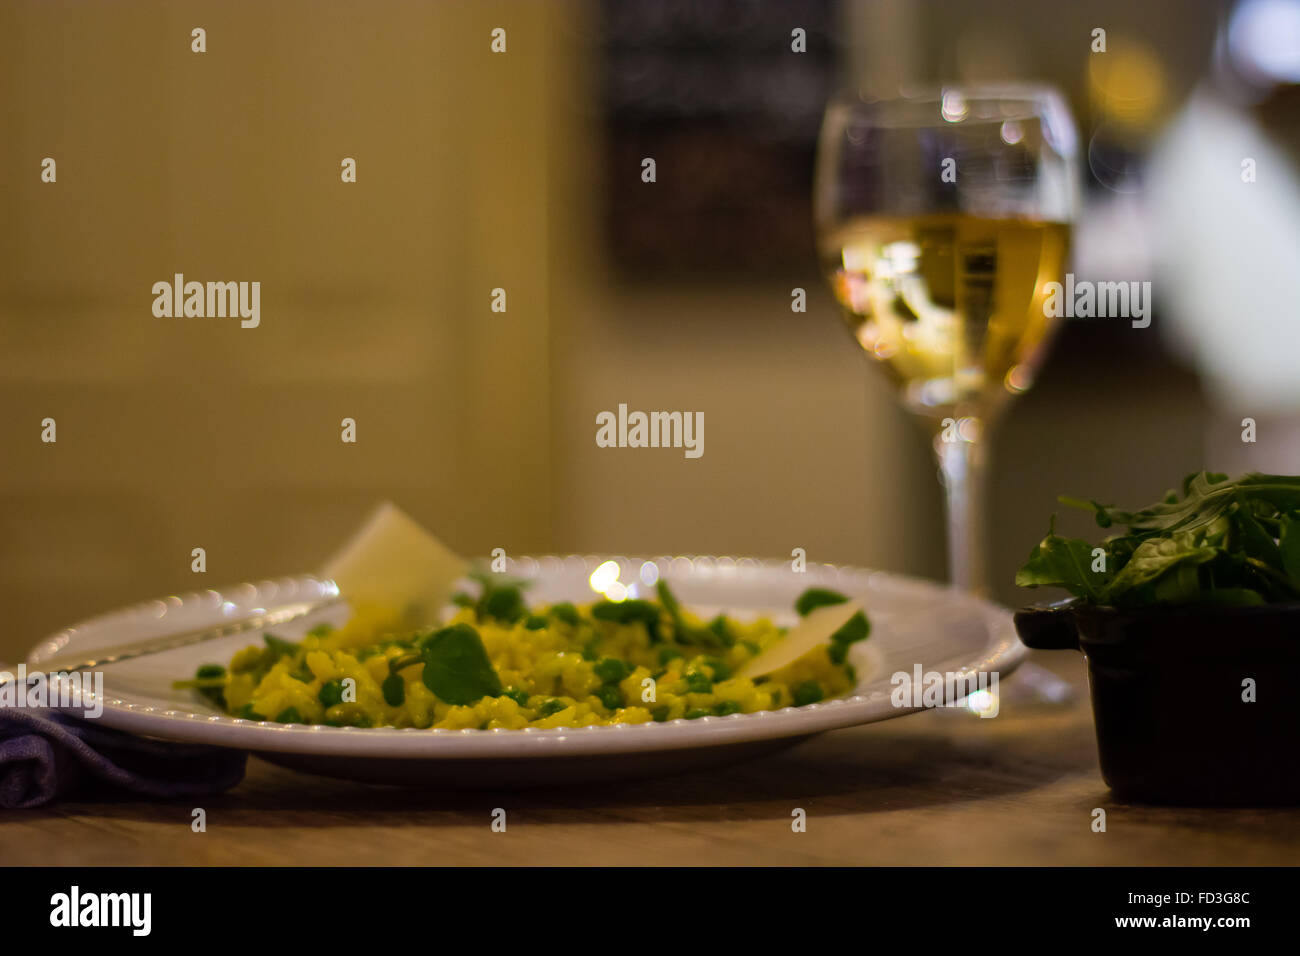 Lauch, Garten Erbsen und Safran-Risotto Teller mit Wein. Französisches Restaurant, die Küche mit hellen gelben Reis Stockfoto